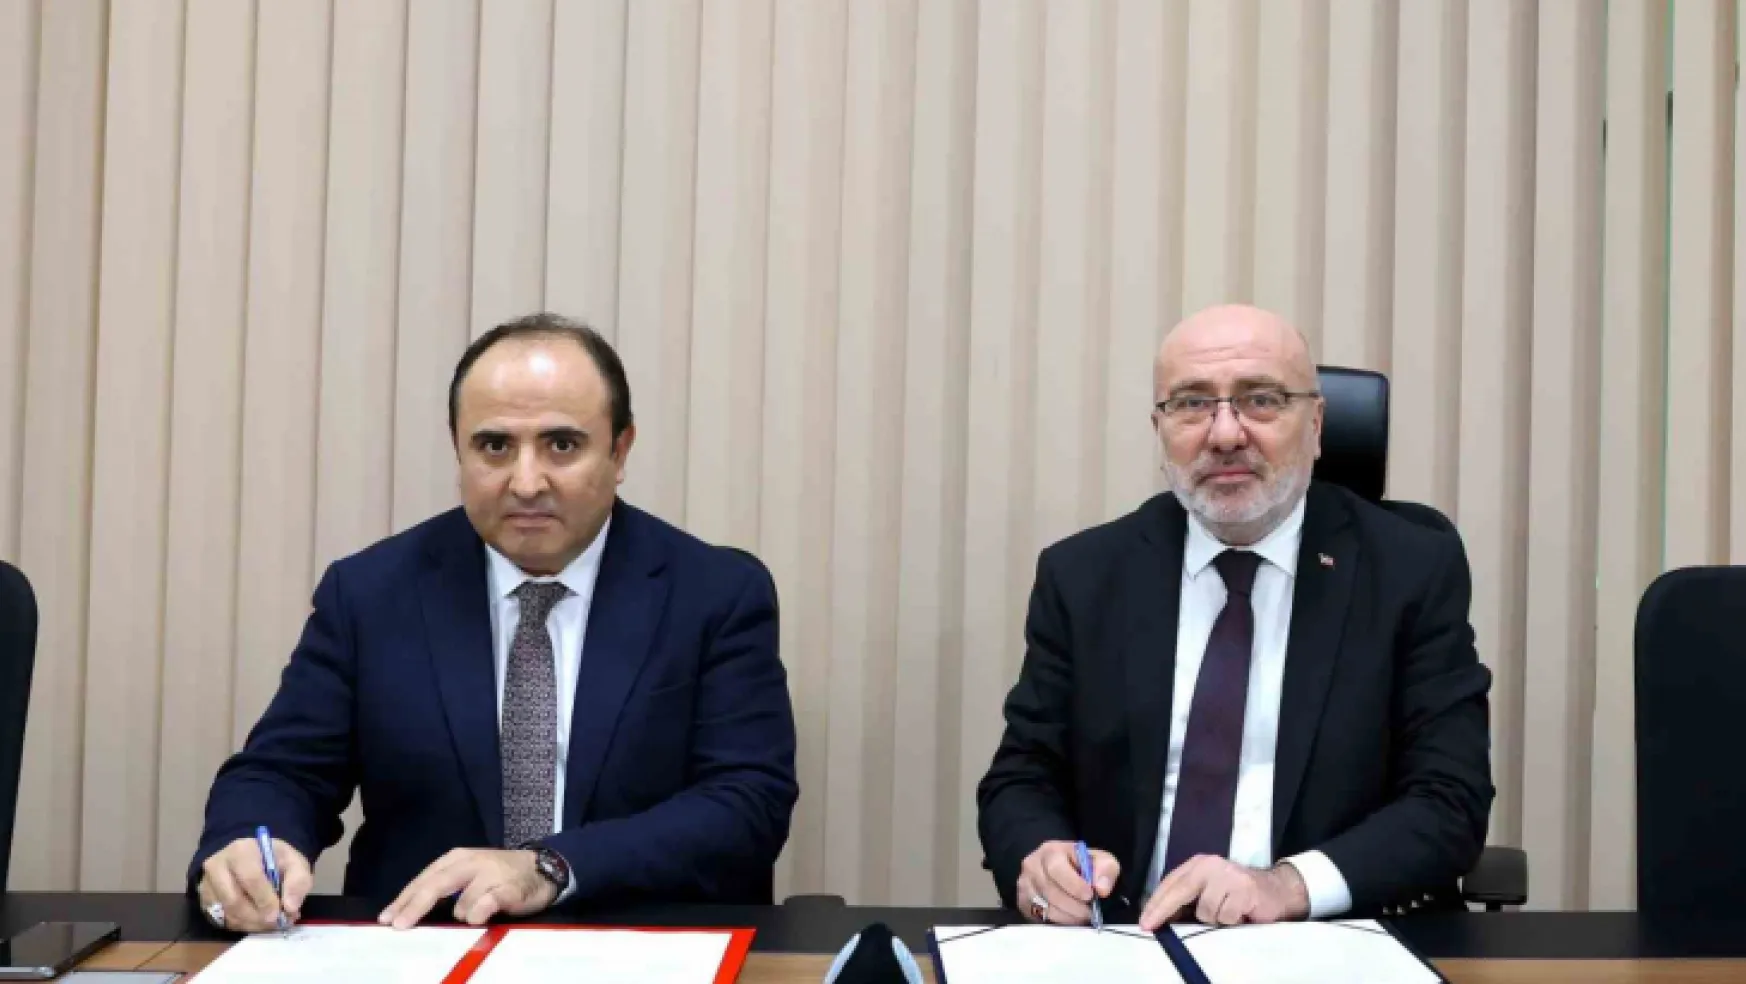 KAYÜ ile ORAN Kalkınma Ajansı arasında destek sözleşmesi imzalandı